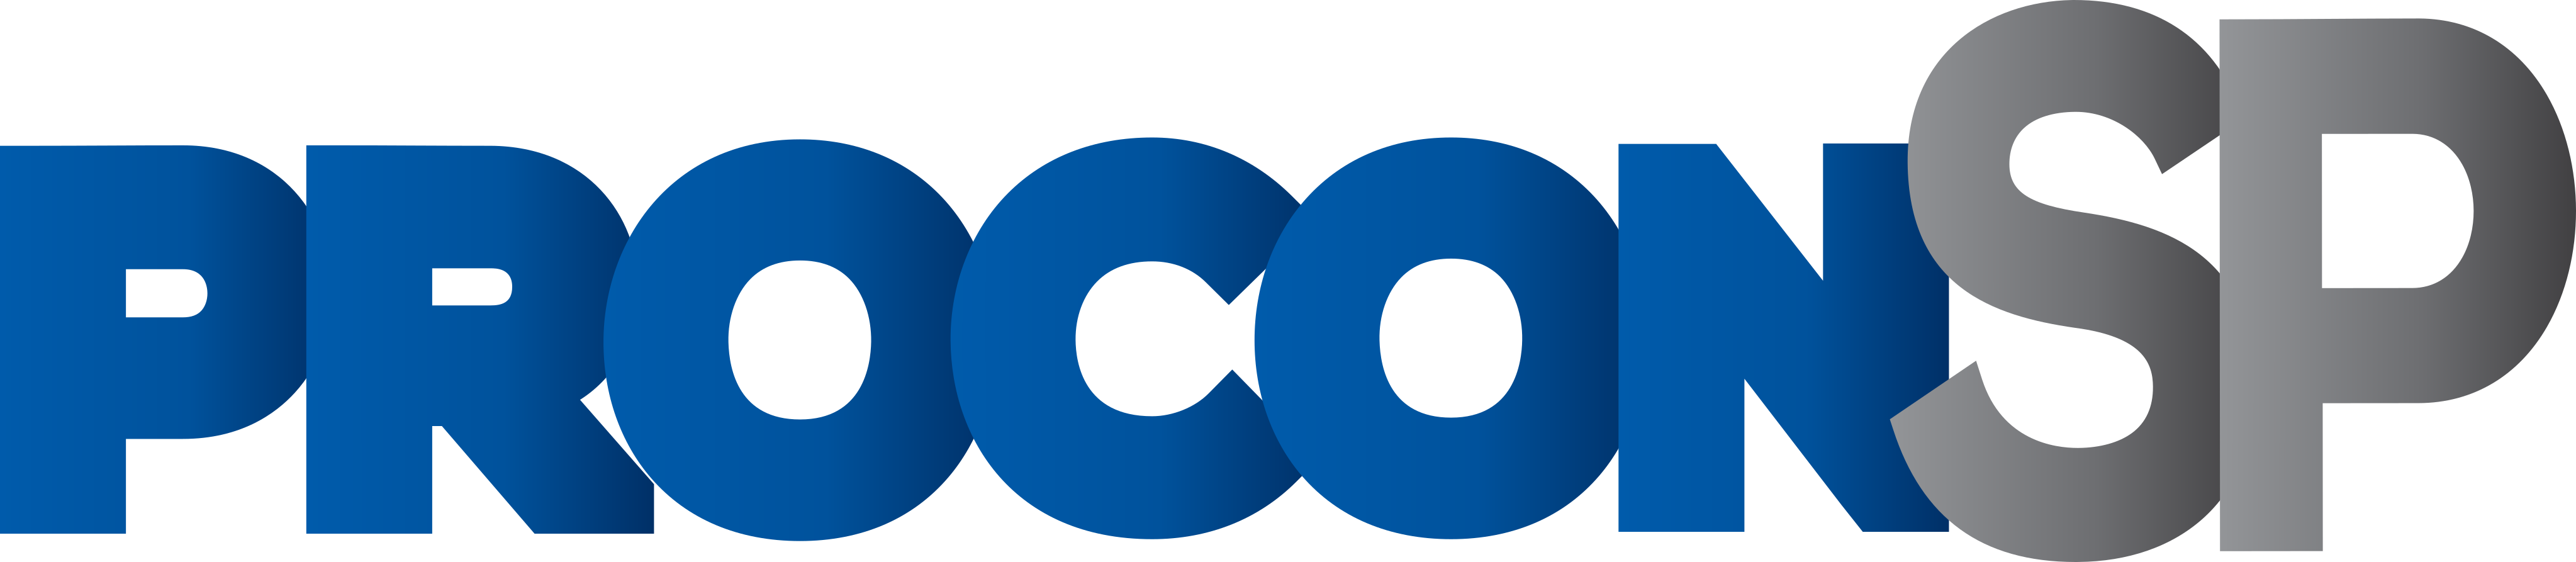 procon-sp-logo